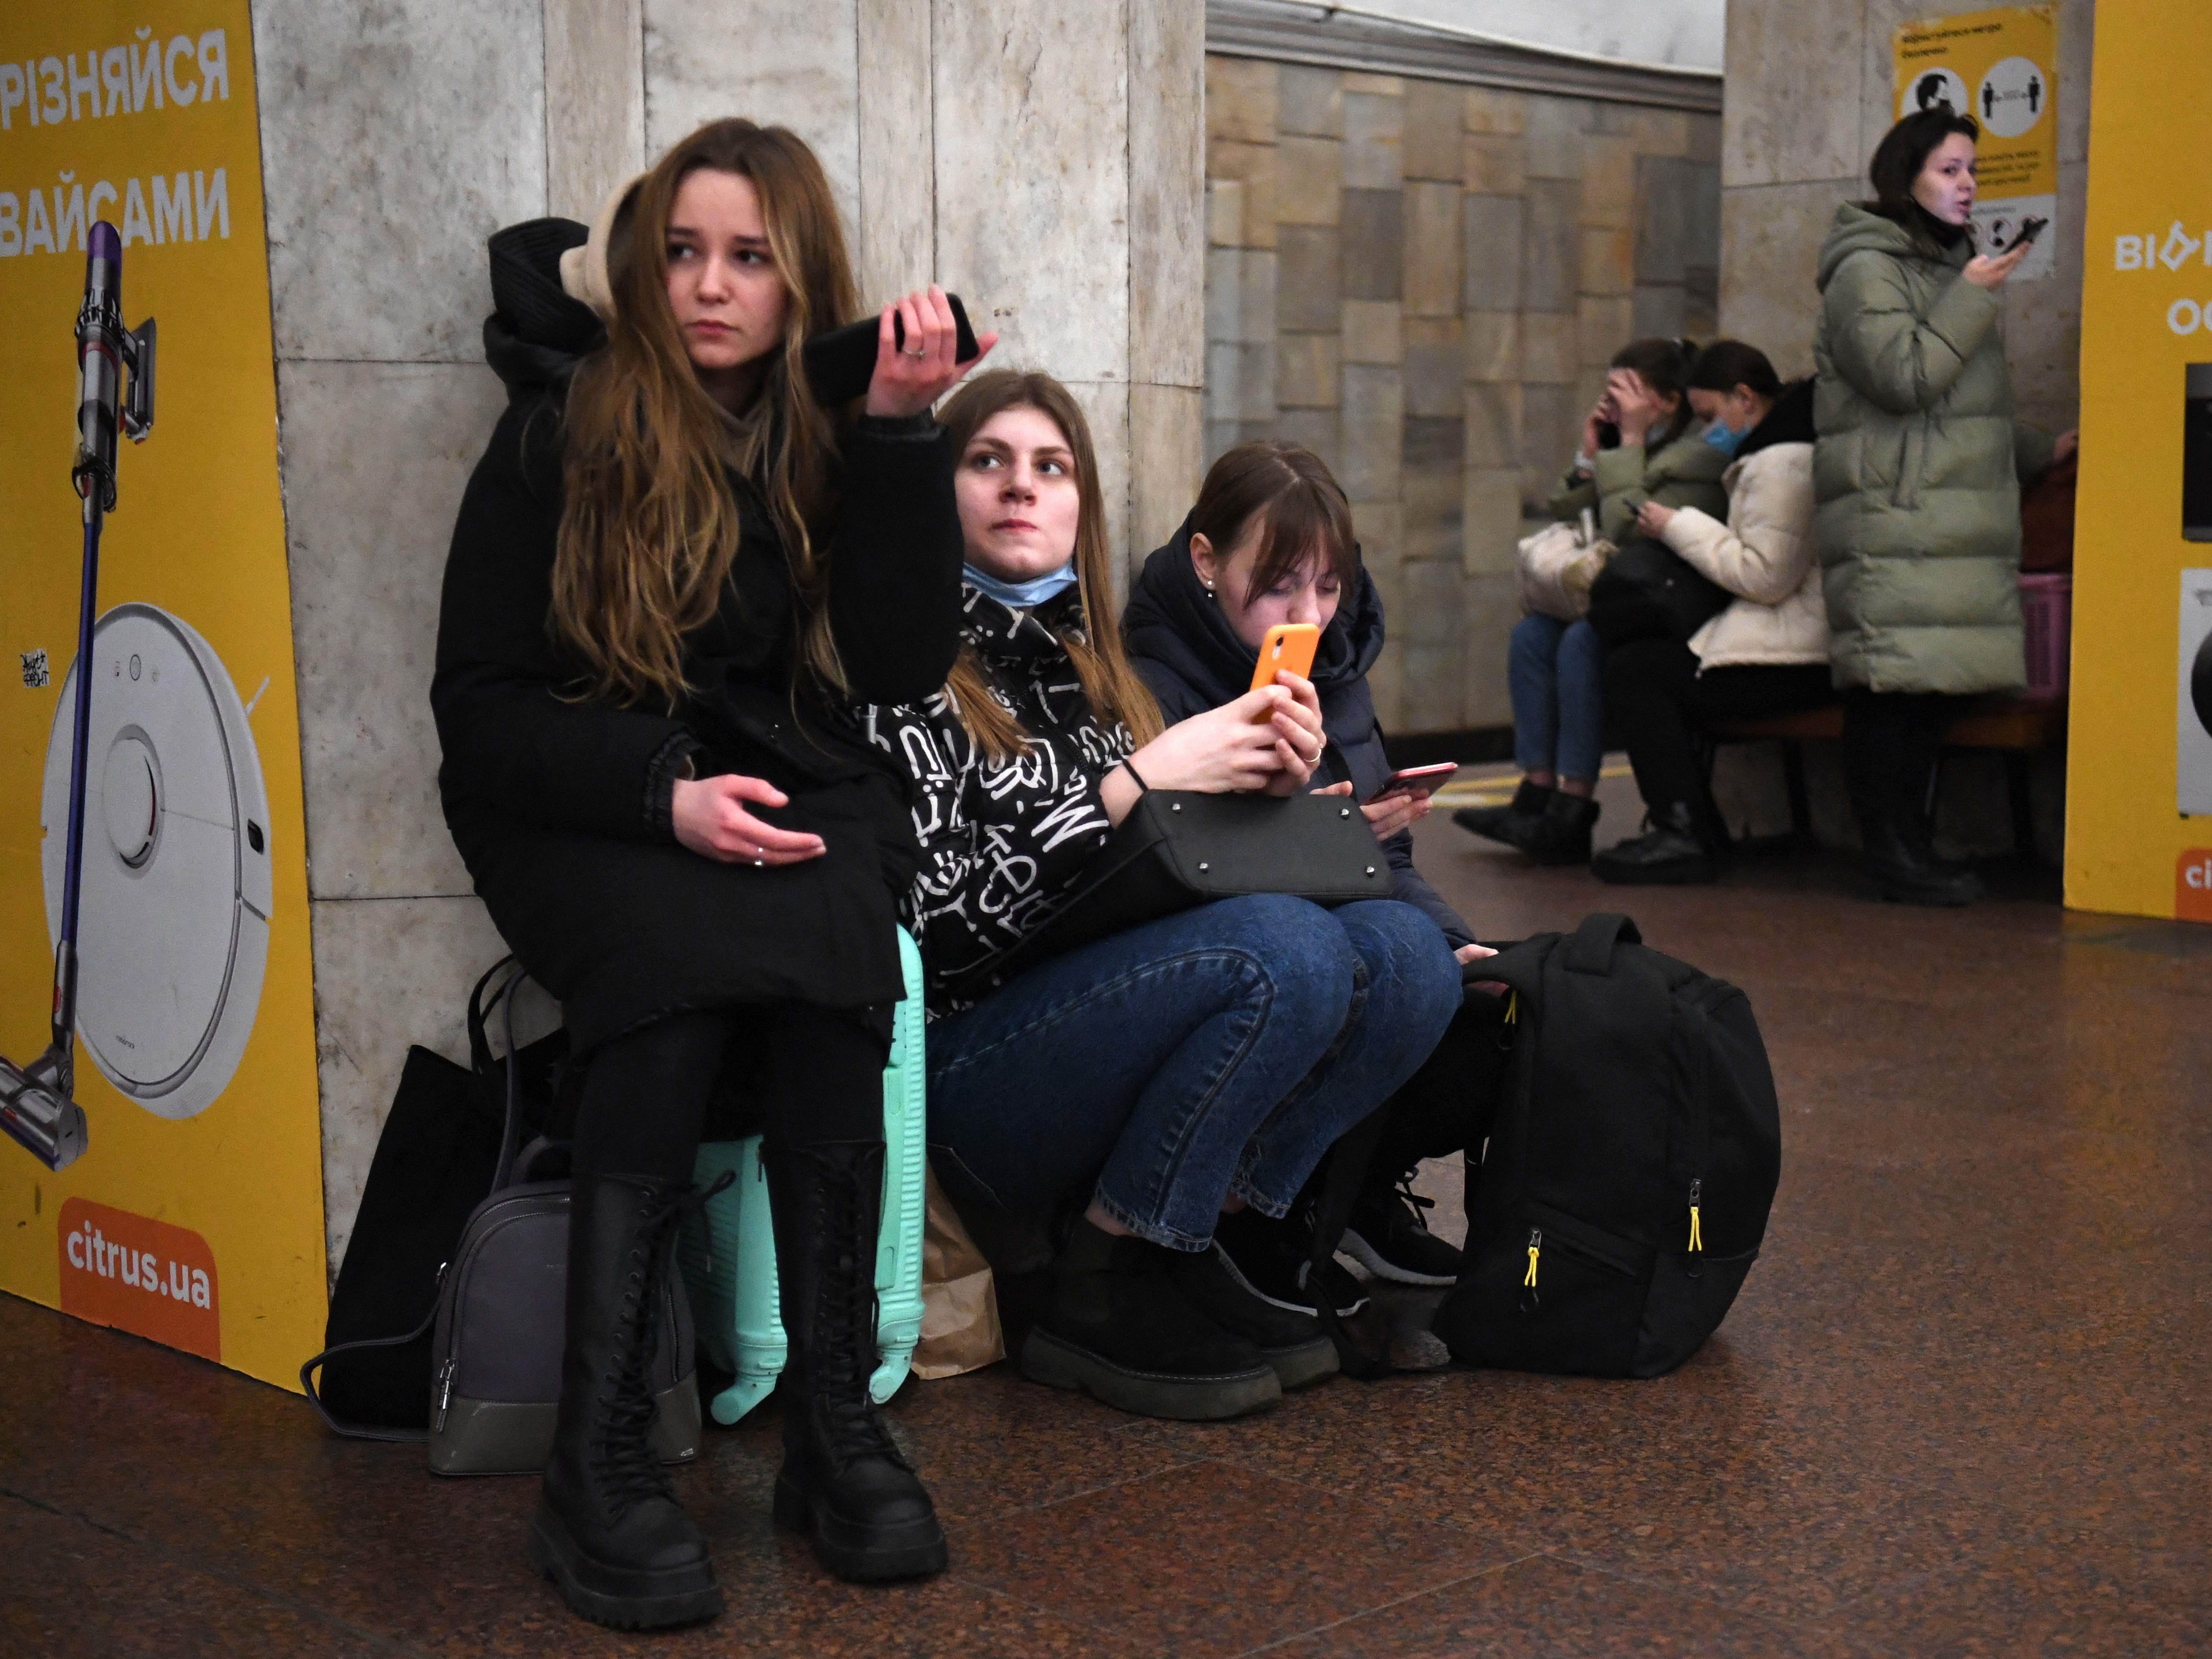 Mädchen halten ihr Mobiltelefon, als sie am Donnerstagmorgen Ortszeit inmitten eines russischen Angriffs auf ihr Land in einer U-Bahn-Station in Kiew, Ukraine, Zuflucht suchen.